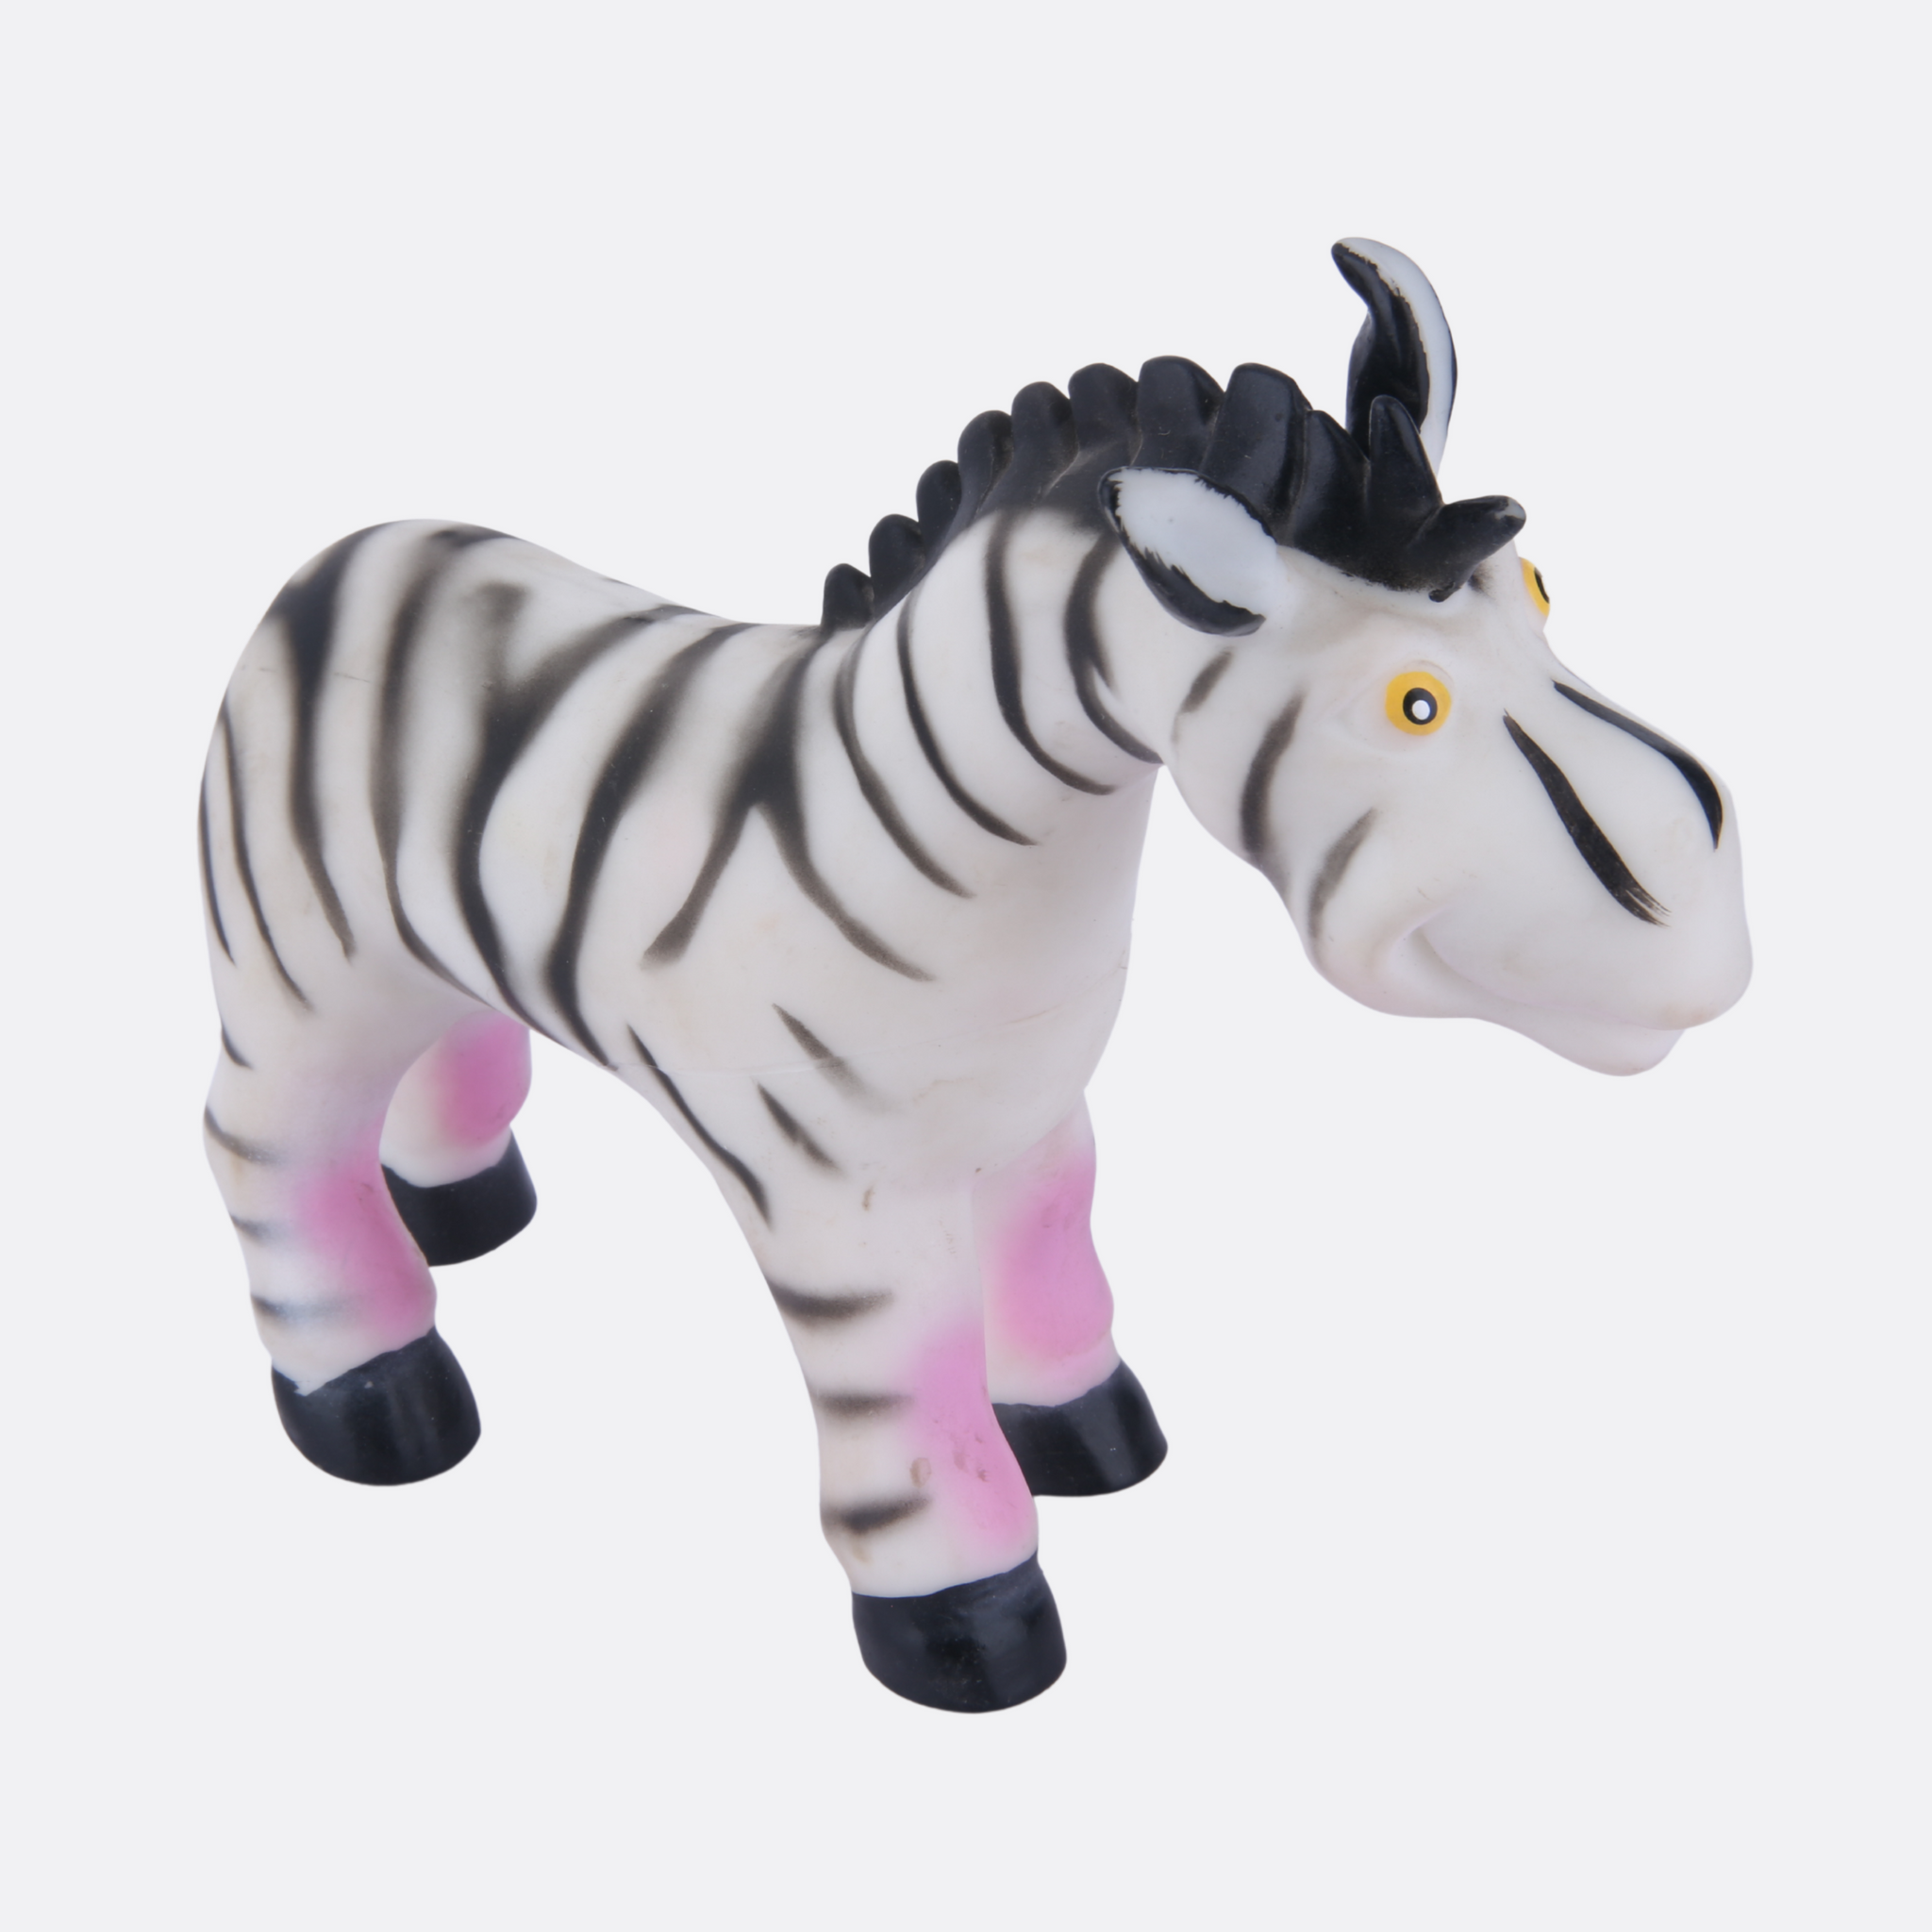 Squishy Zebra toy